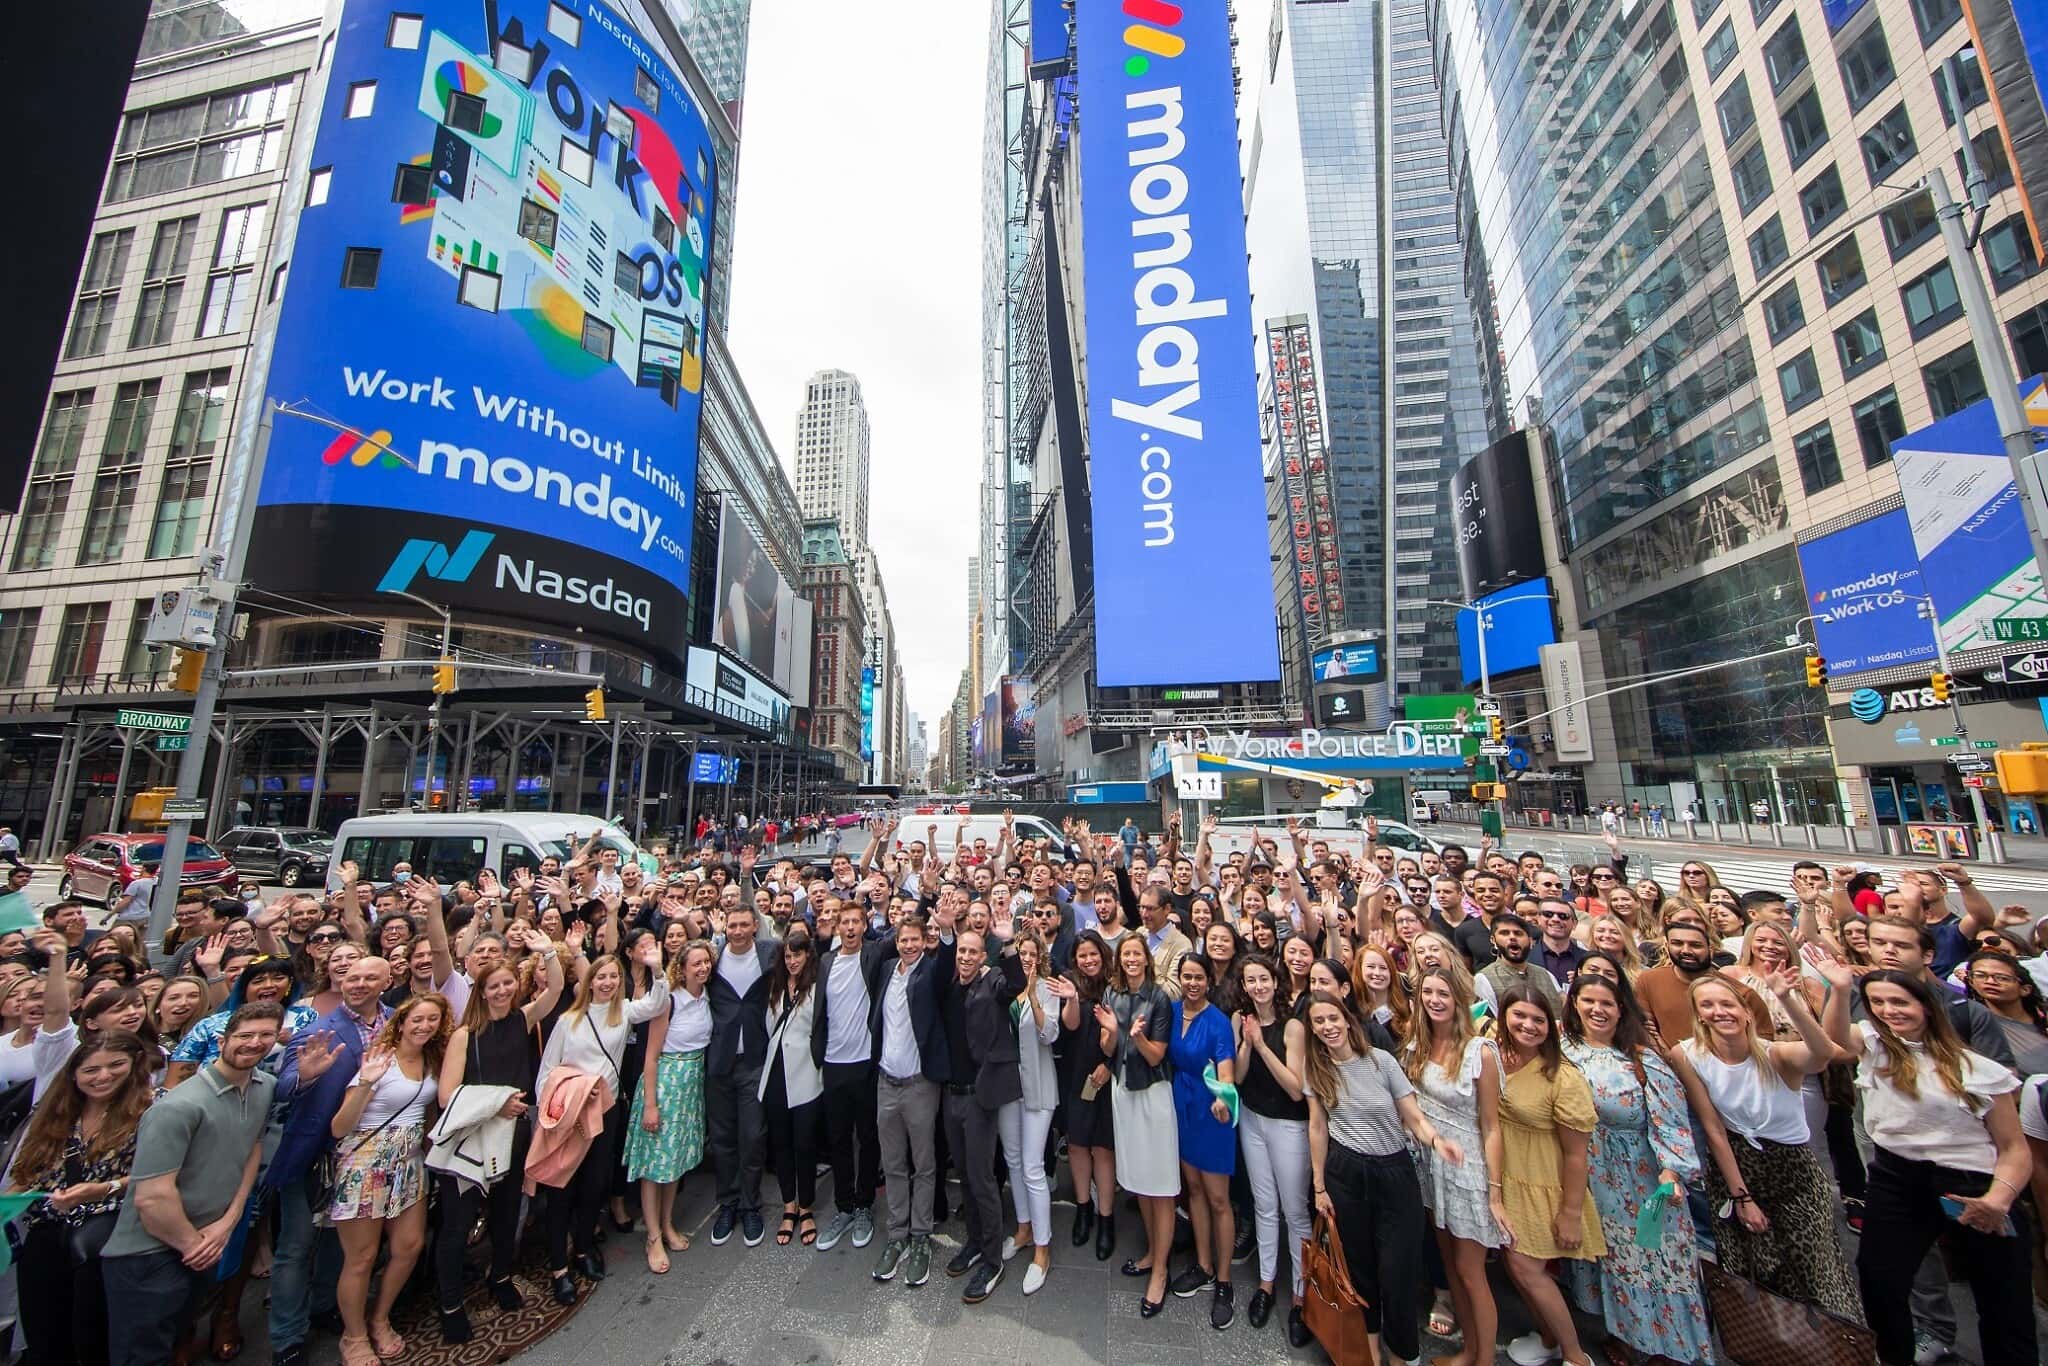 עובדי מאנדיי, סטרטאפ ישראלי, חוגגים בטיימס סקוור בניו יורק ביום ההנפקה של החברה בנאסד&quot;ק לפי שווי של 6.8 מיליארד דולר, 10 ביוני 2021 (צילום: מאנדיי)